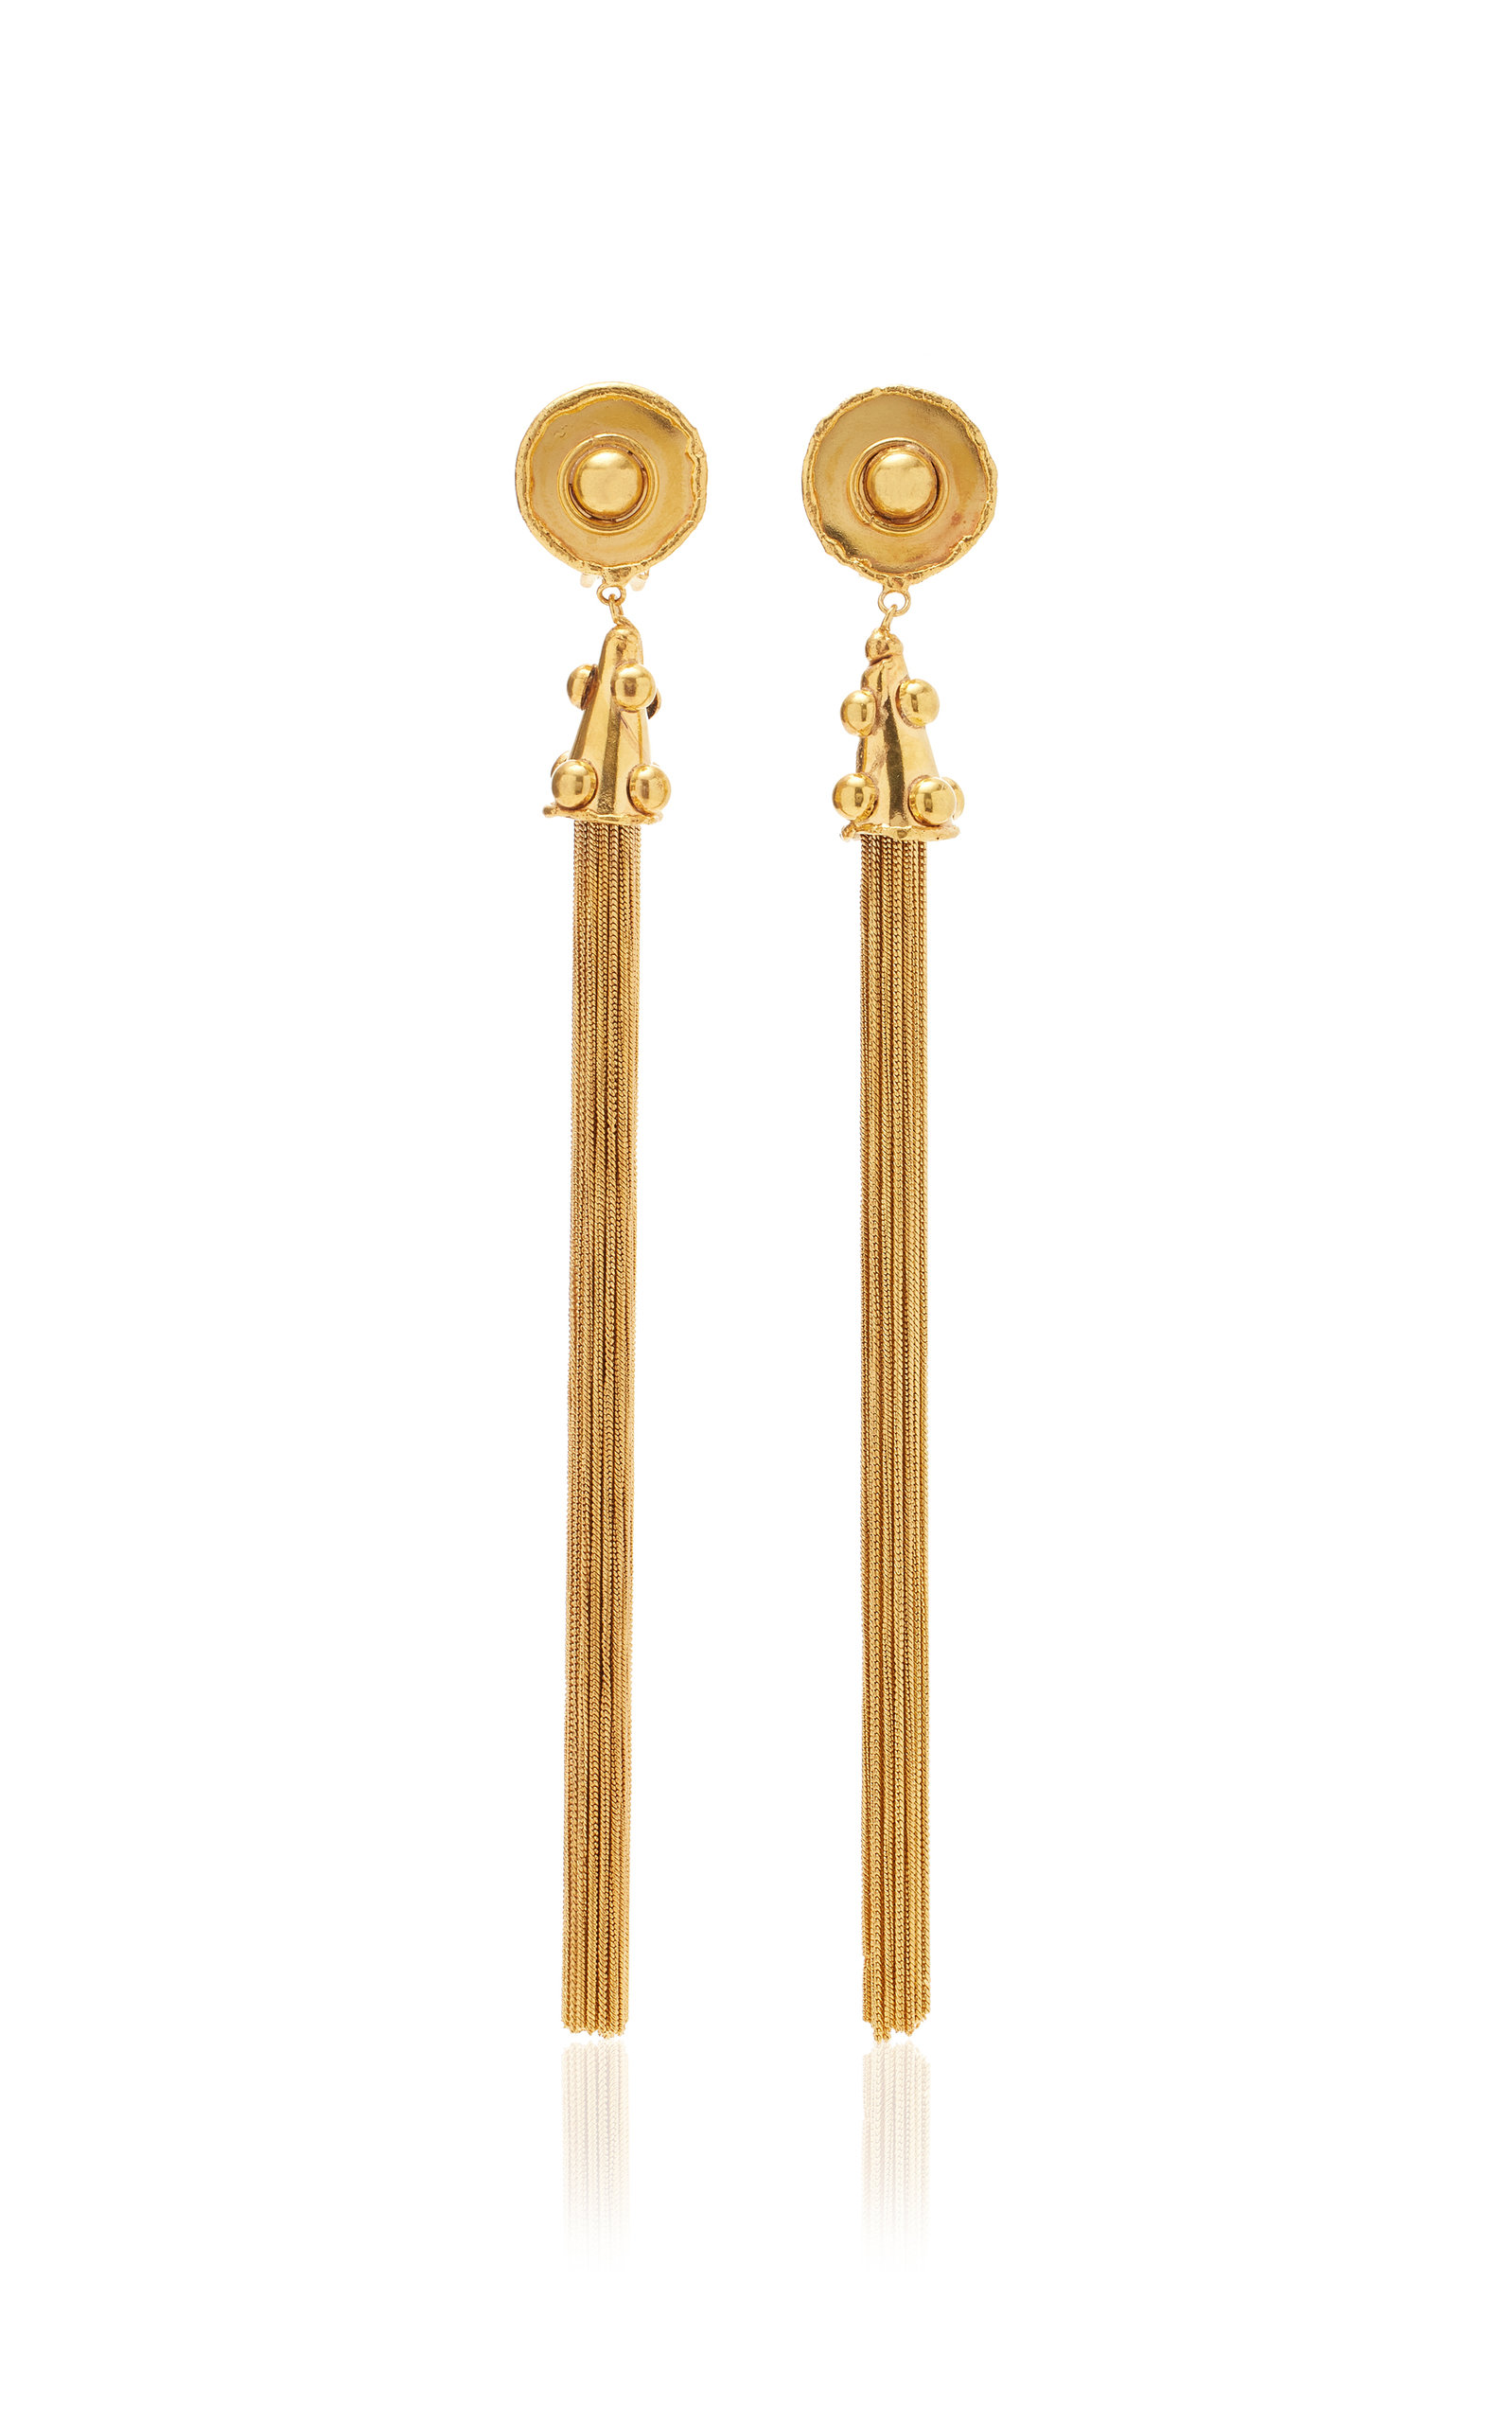 PomponXXL 22K Gold-Plated Earrings